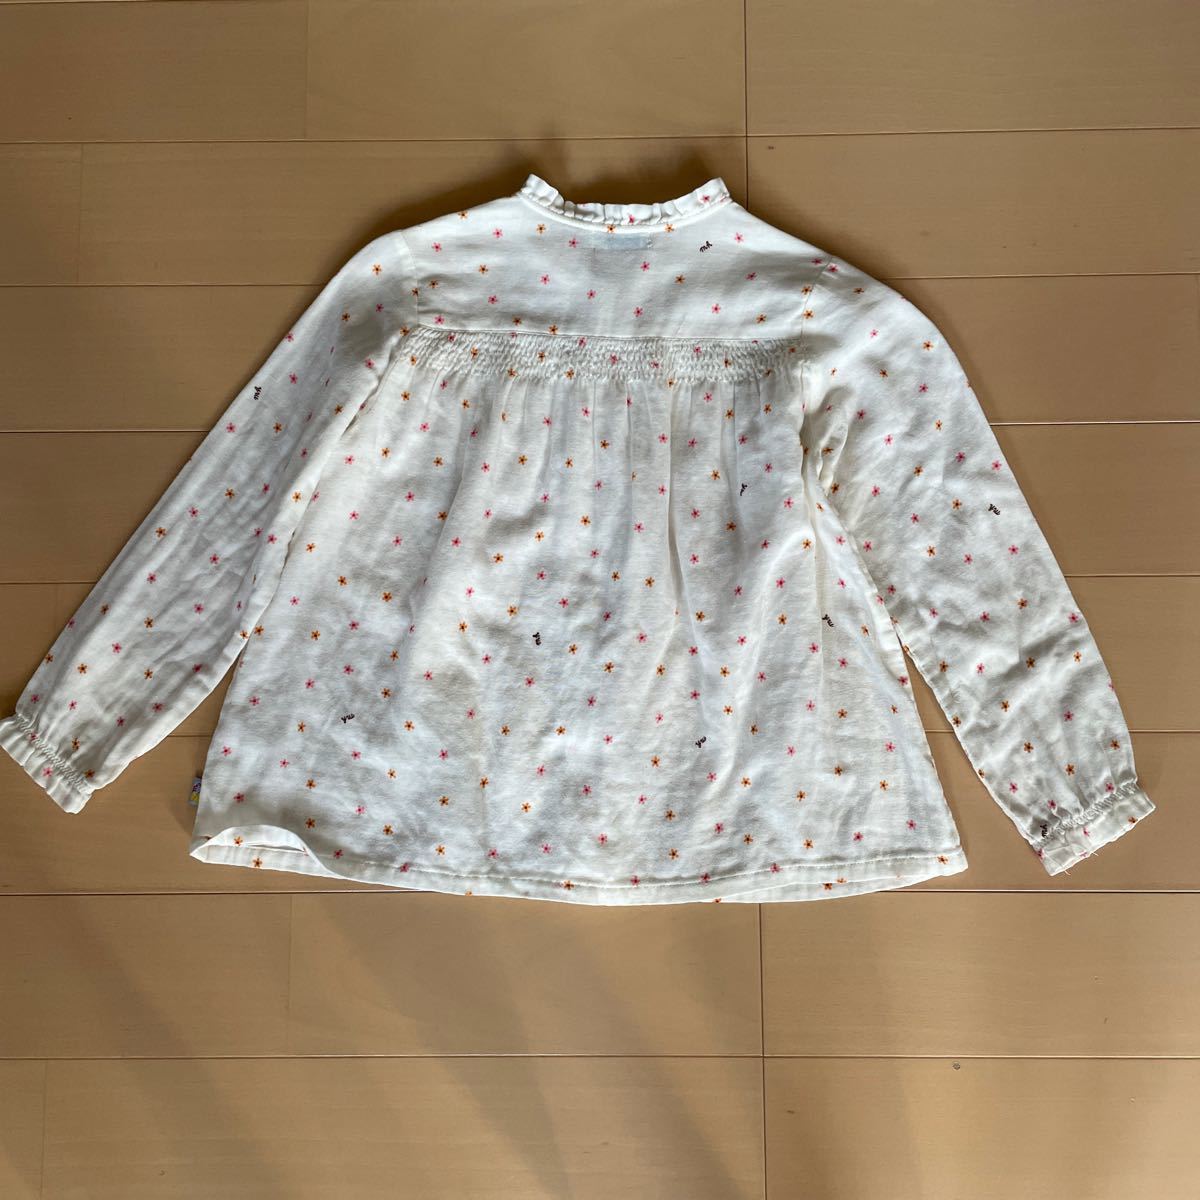  бесплатная доставка Miki house Miki House длинный рукав блуза белый цветочный принт 130cm мягкость марля материалы включая доставку 